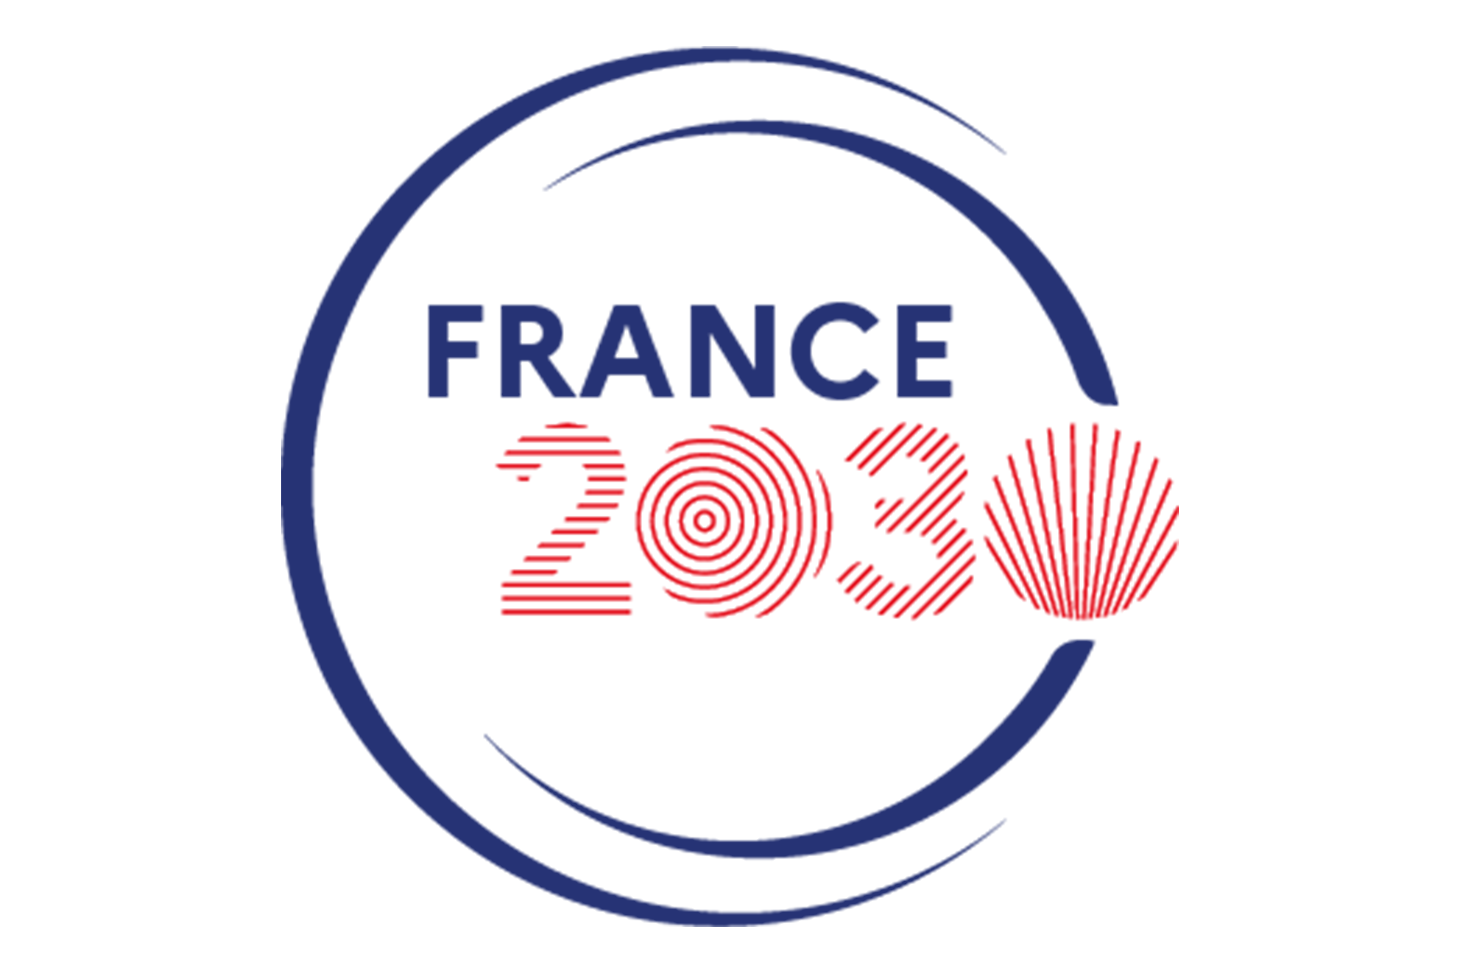 Ce workshop est dans le cadre de projet France 2030.